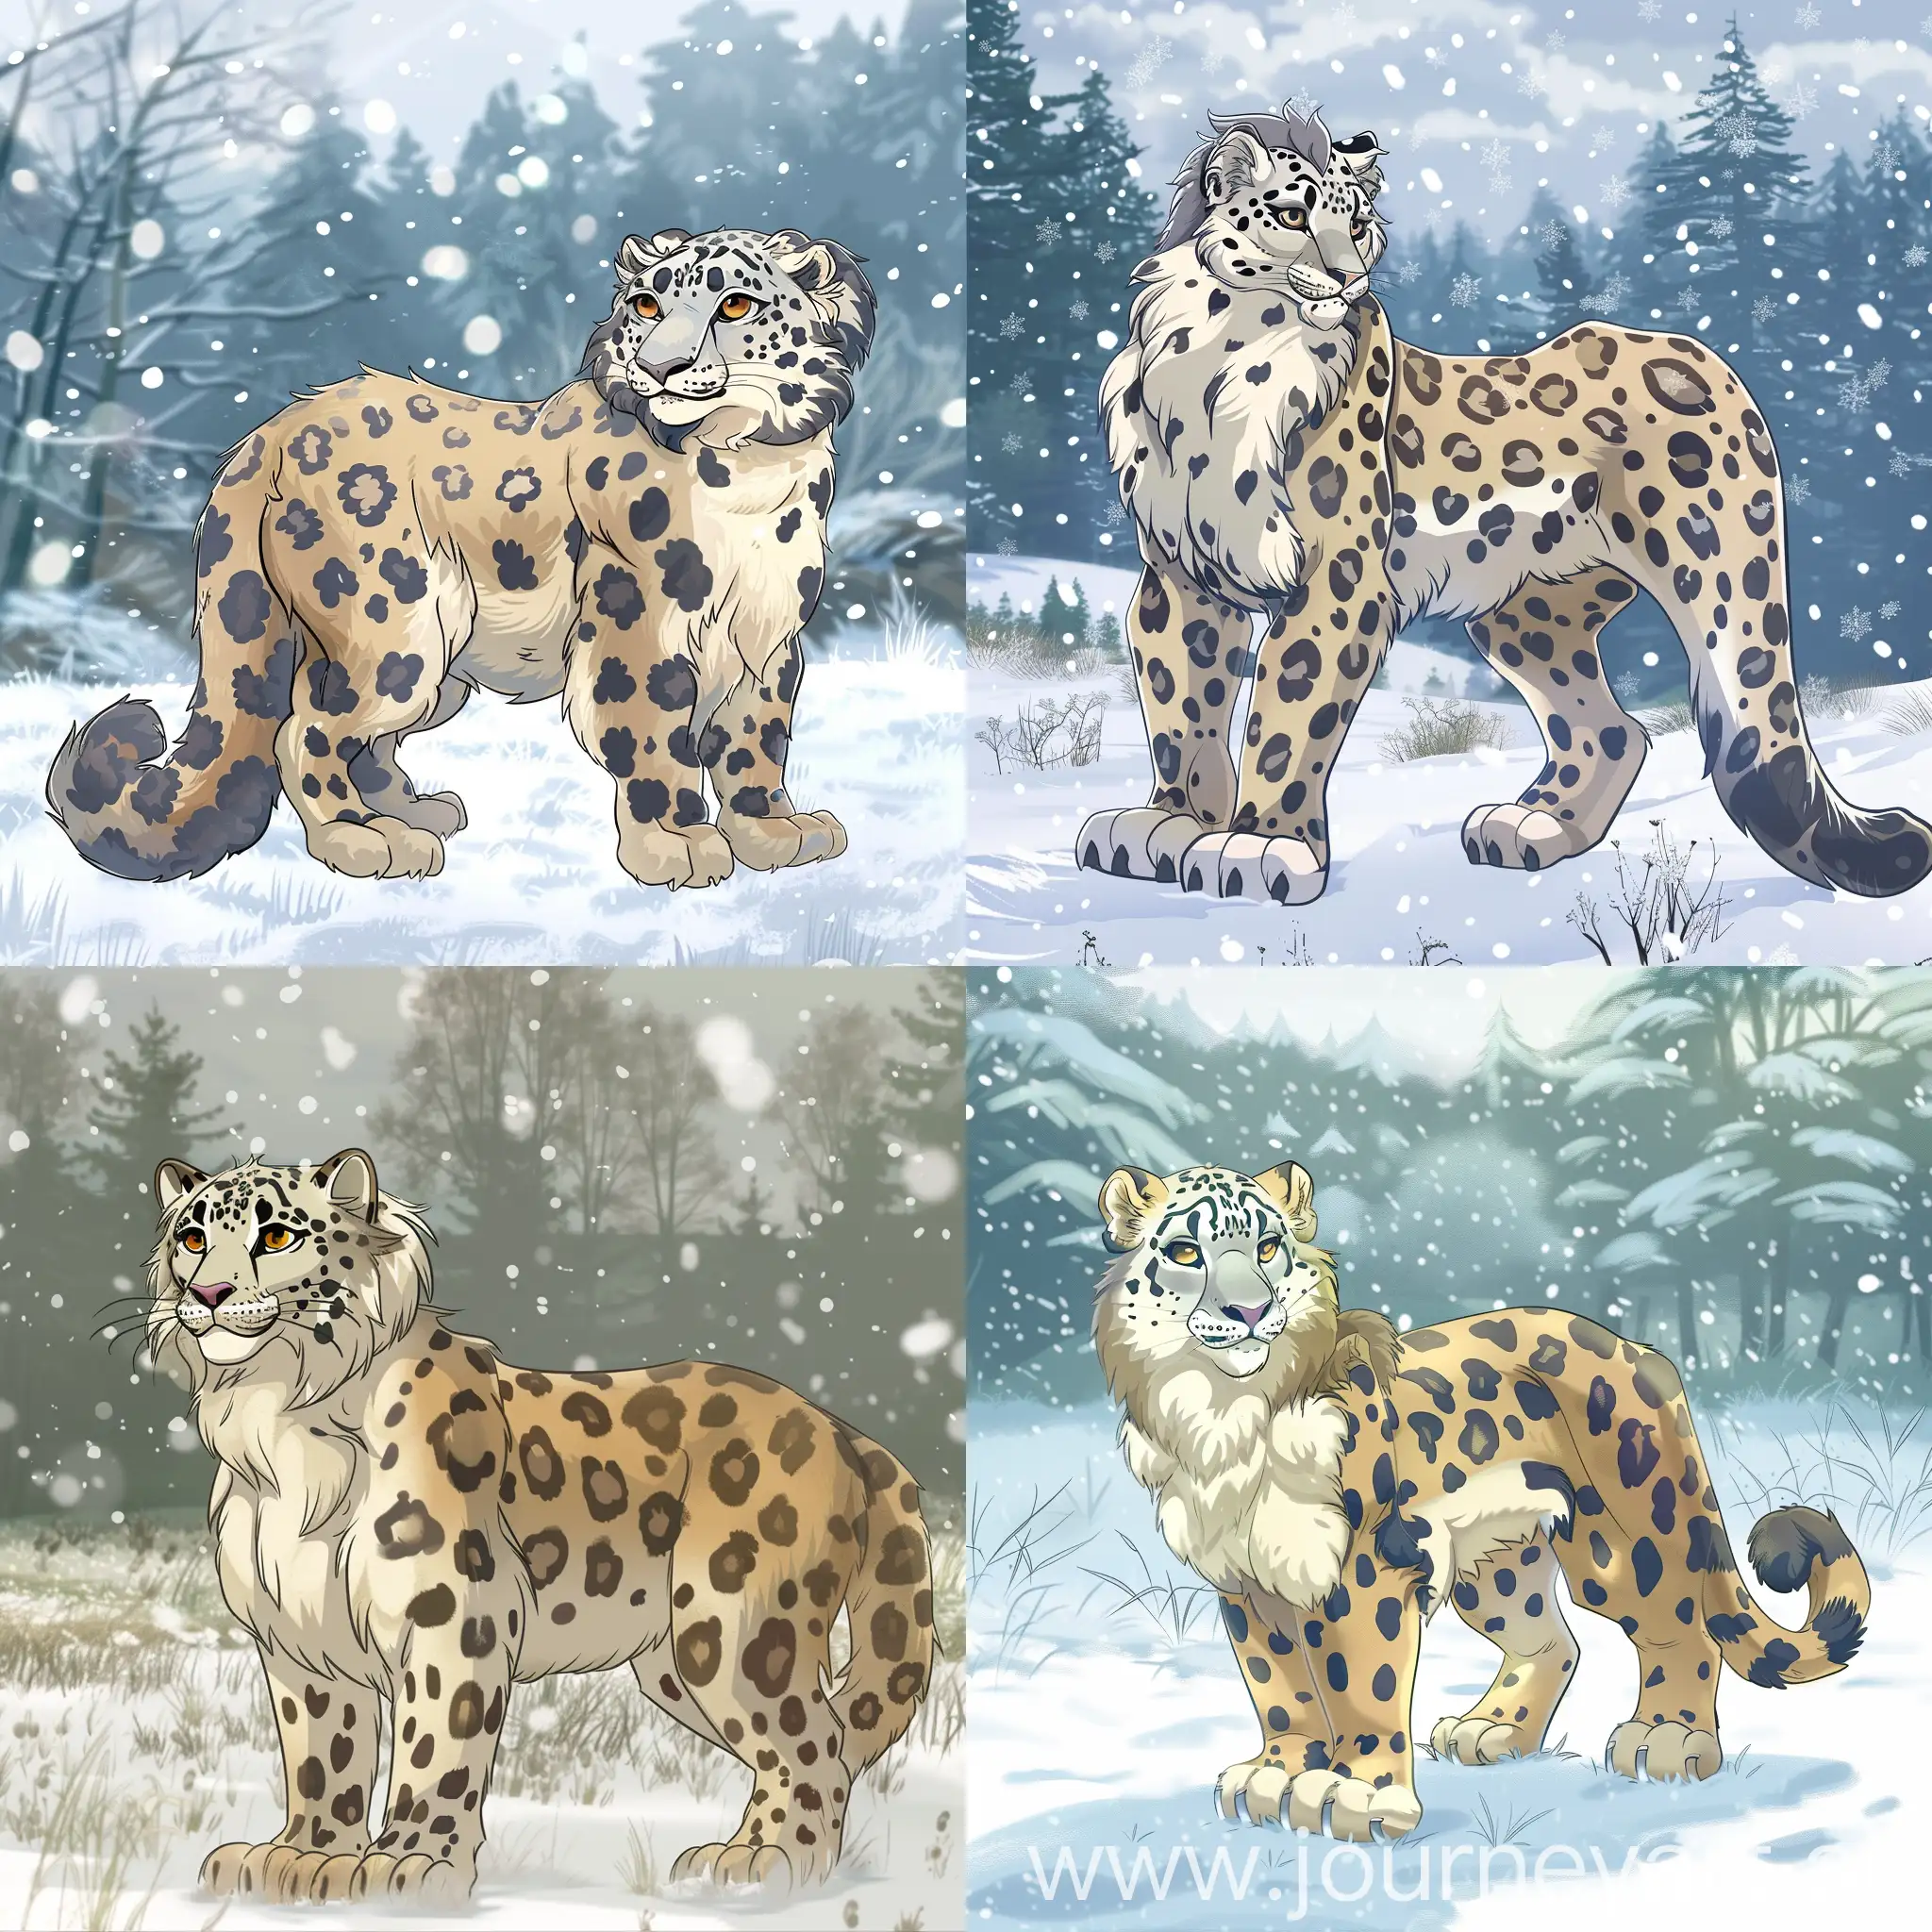 Cartoon-Snow-Leopard-in-Snowy-Forest-Scene